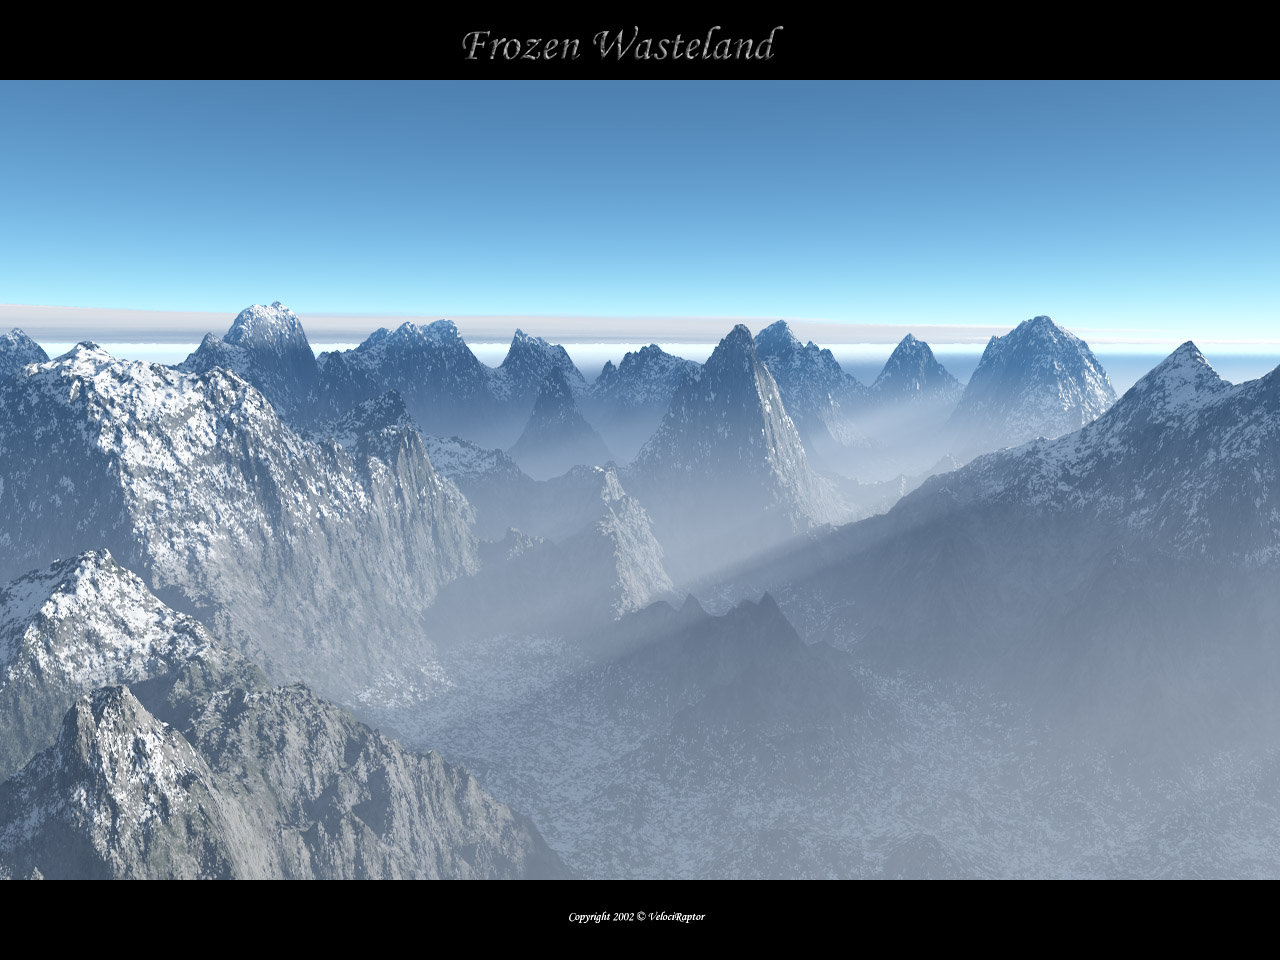 Frozen Wasteland 2   Border by furryphotos on deviantART